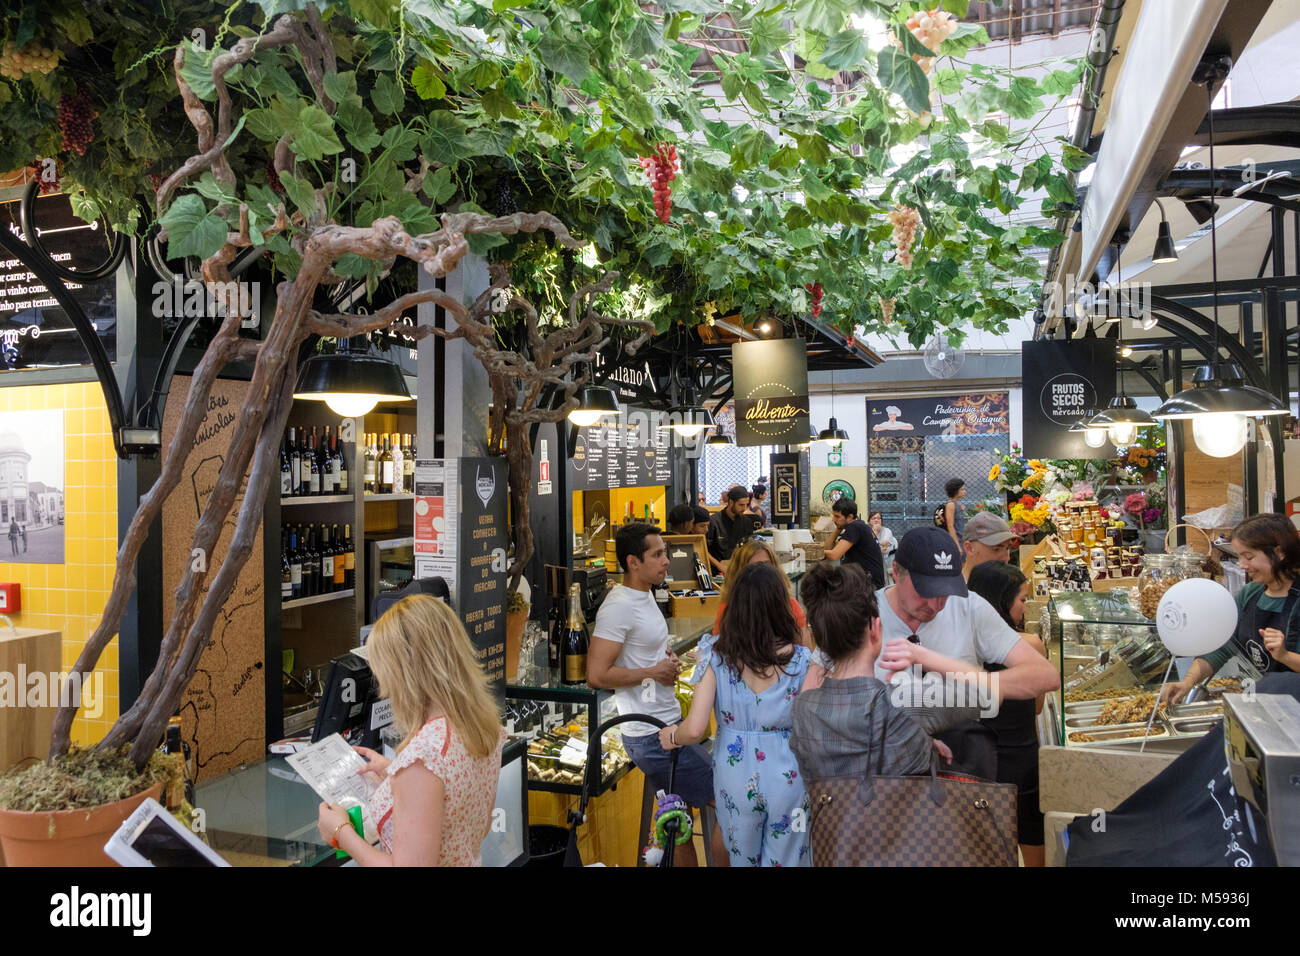 Campo de Ourique et marché Food Hall entre Estrela et quartiers d'Amoreiras, Lisbonne, Portugal Banque D'Images